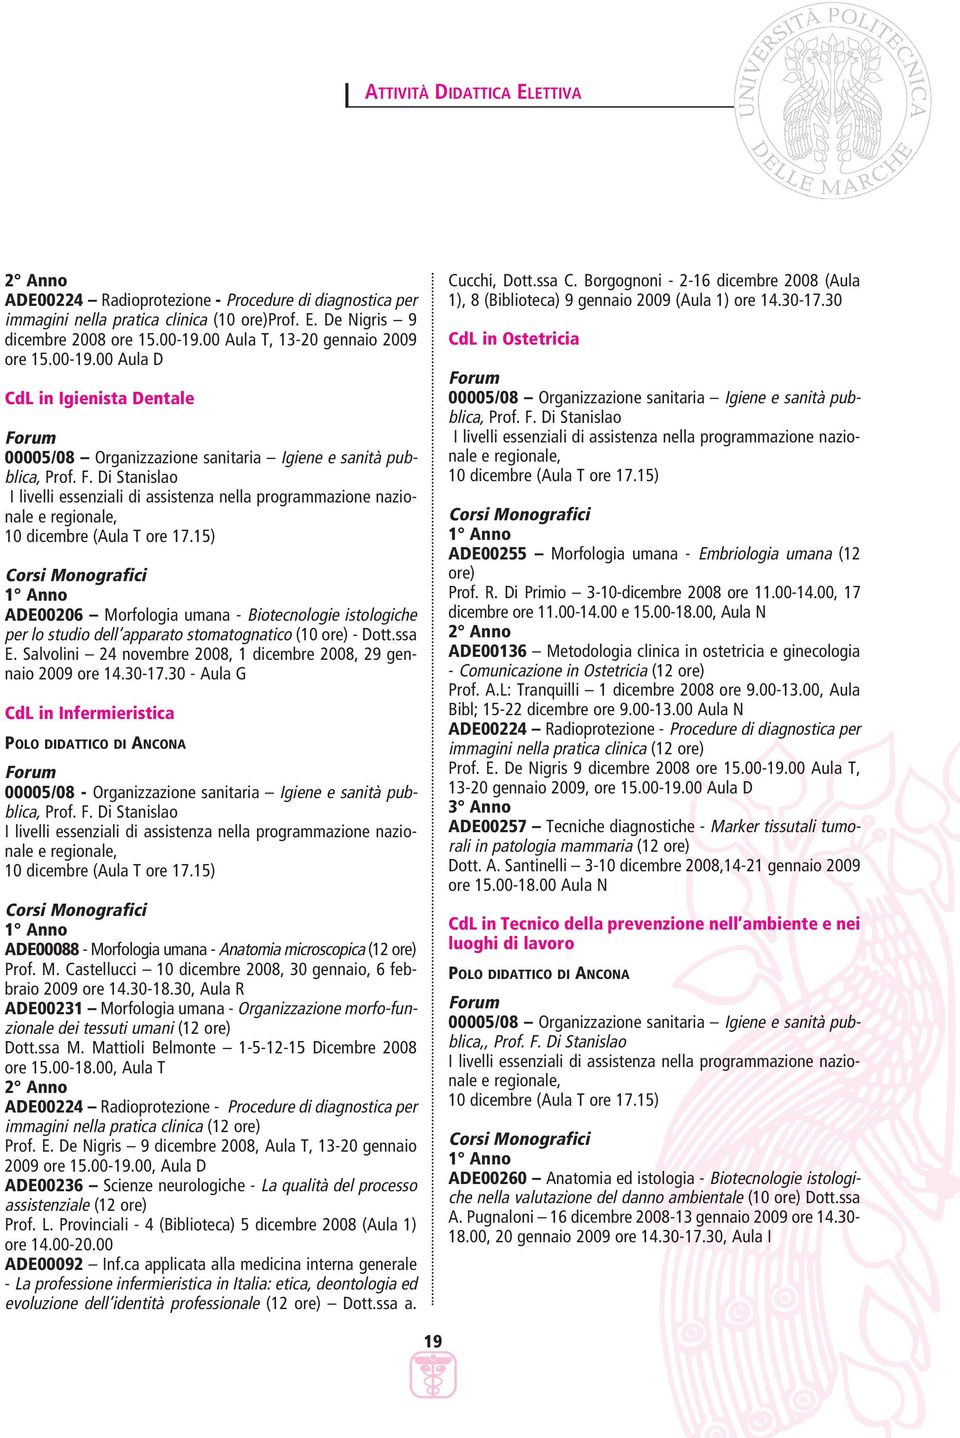 15) Corsi Monografici 1 Anno ADE00206 Morfologia umana - Biotecnologie istologiche per lo studio dell apparato stomatognatico (10 ore) - Dott.ssa E.